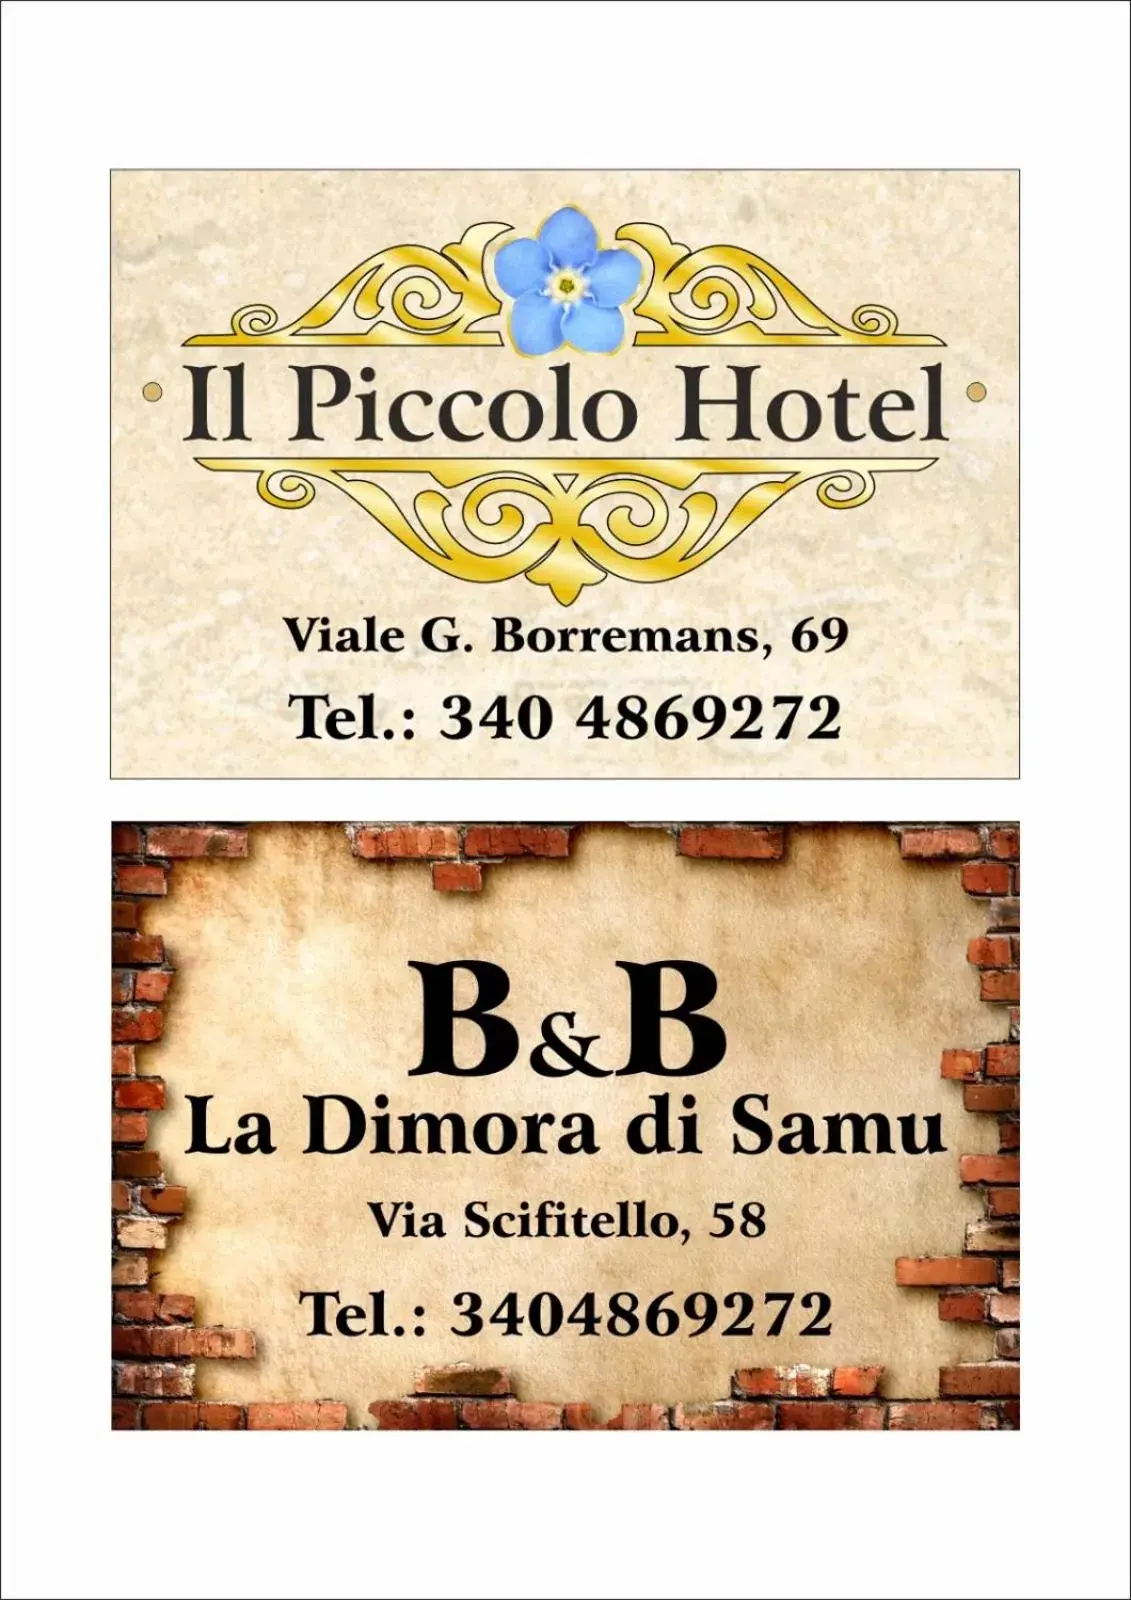 Logo/Certificate/Sign in Il Piccolo Hotel